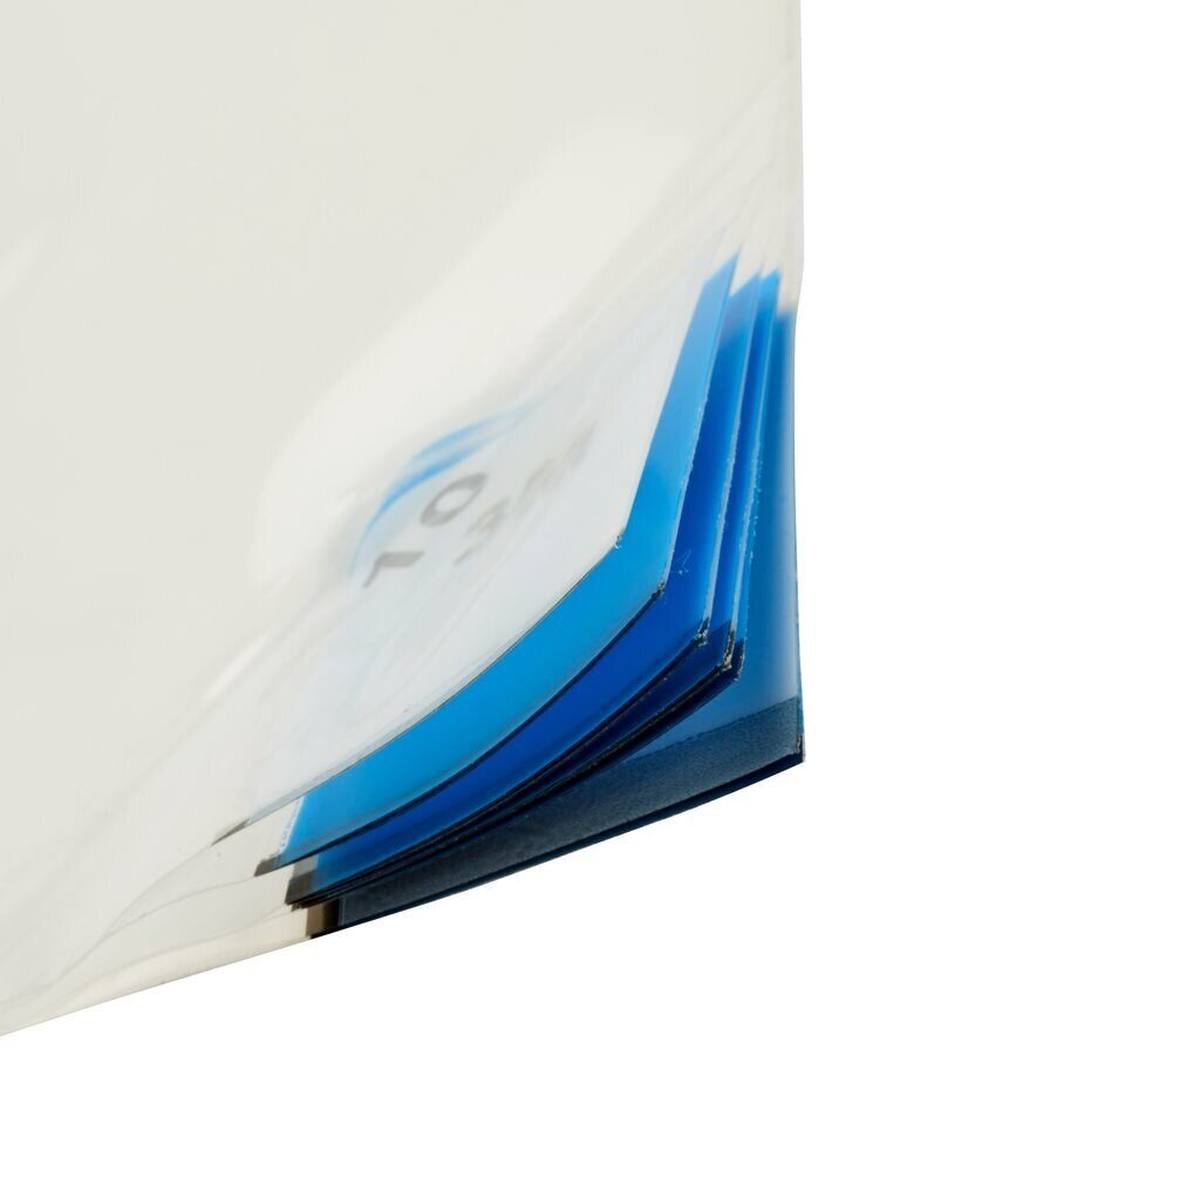 3M 4300 Nomad Feinstaub Adhäsivmatte, weiß, 1,15m x 0,6m, 40Stück transparent Polyethylen-Schichten